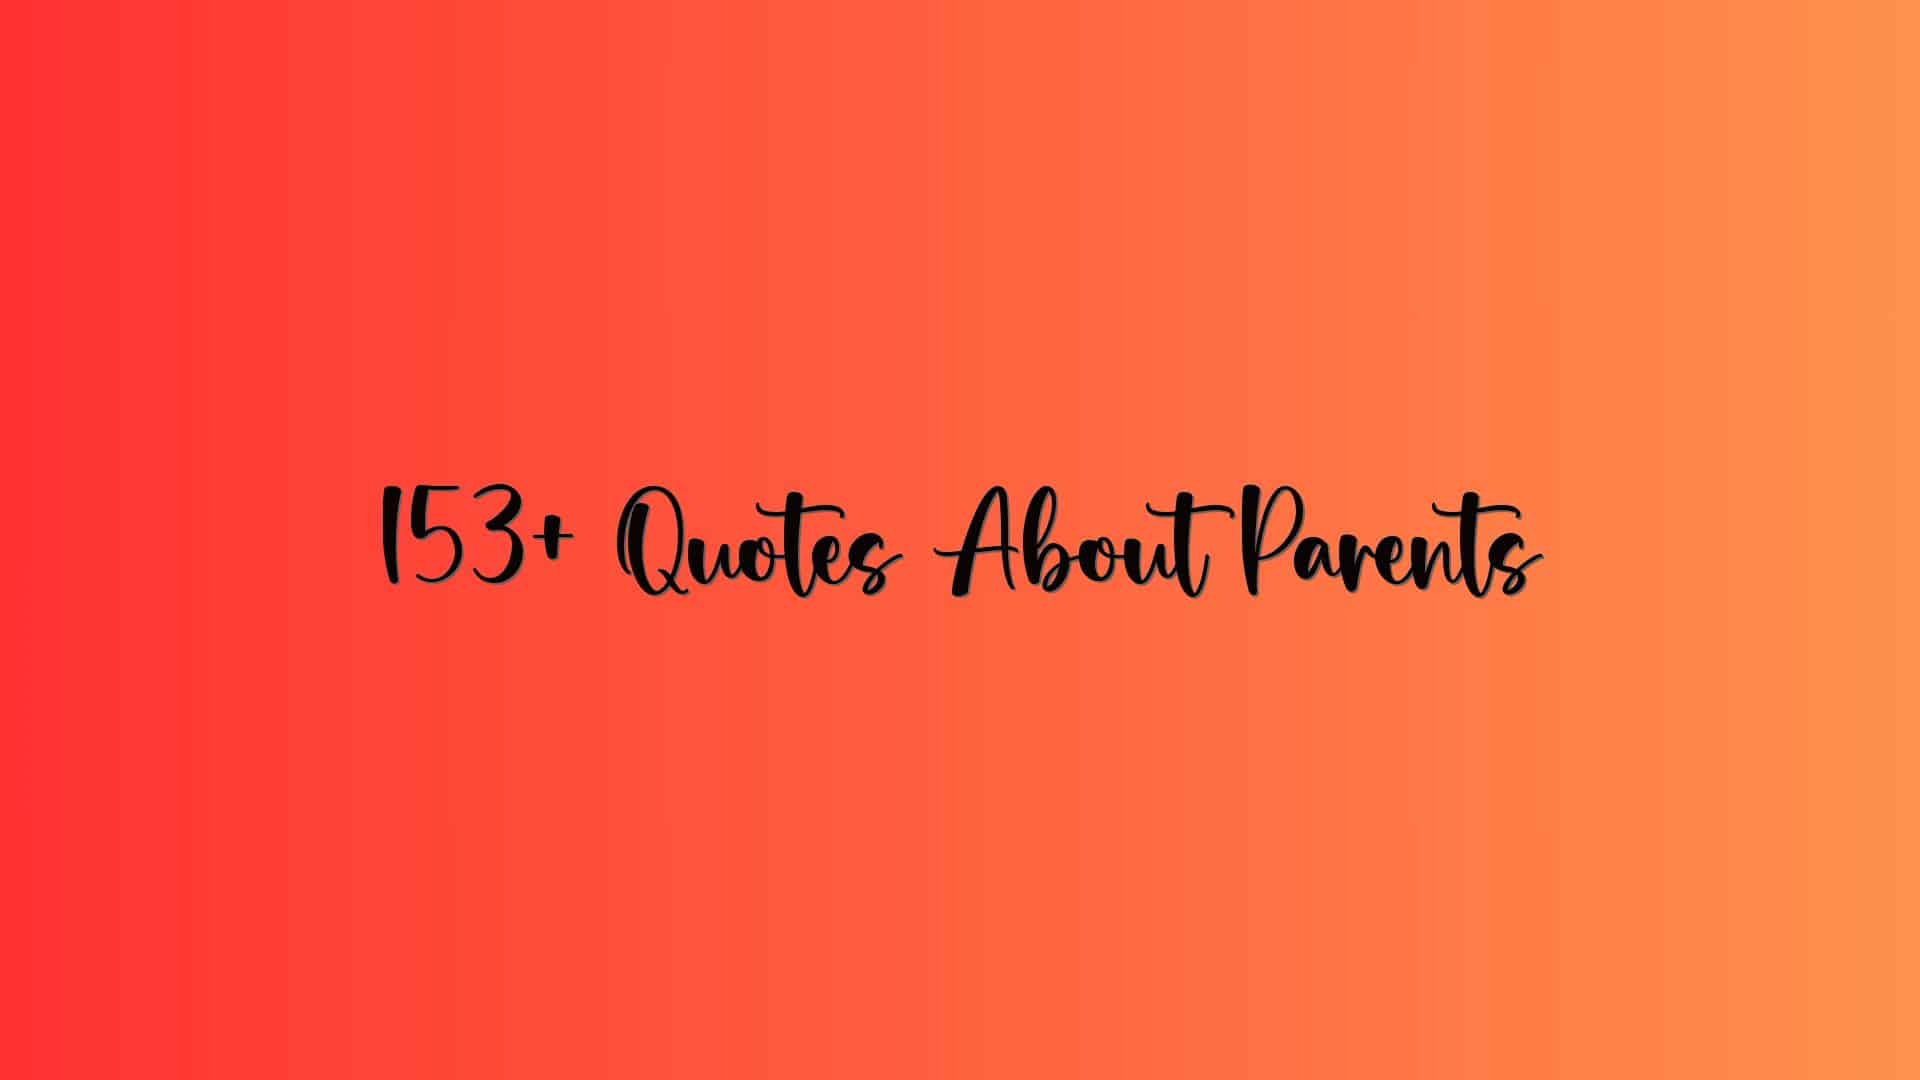 153+ Quotes About Parents